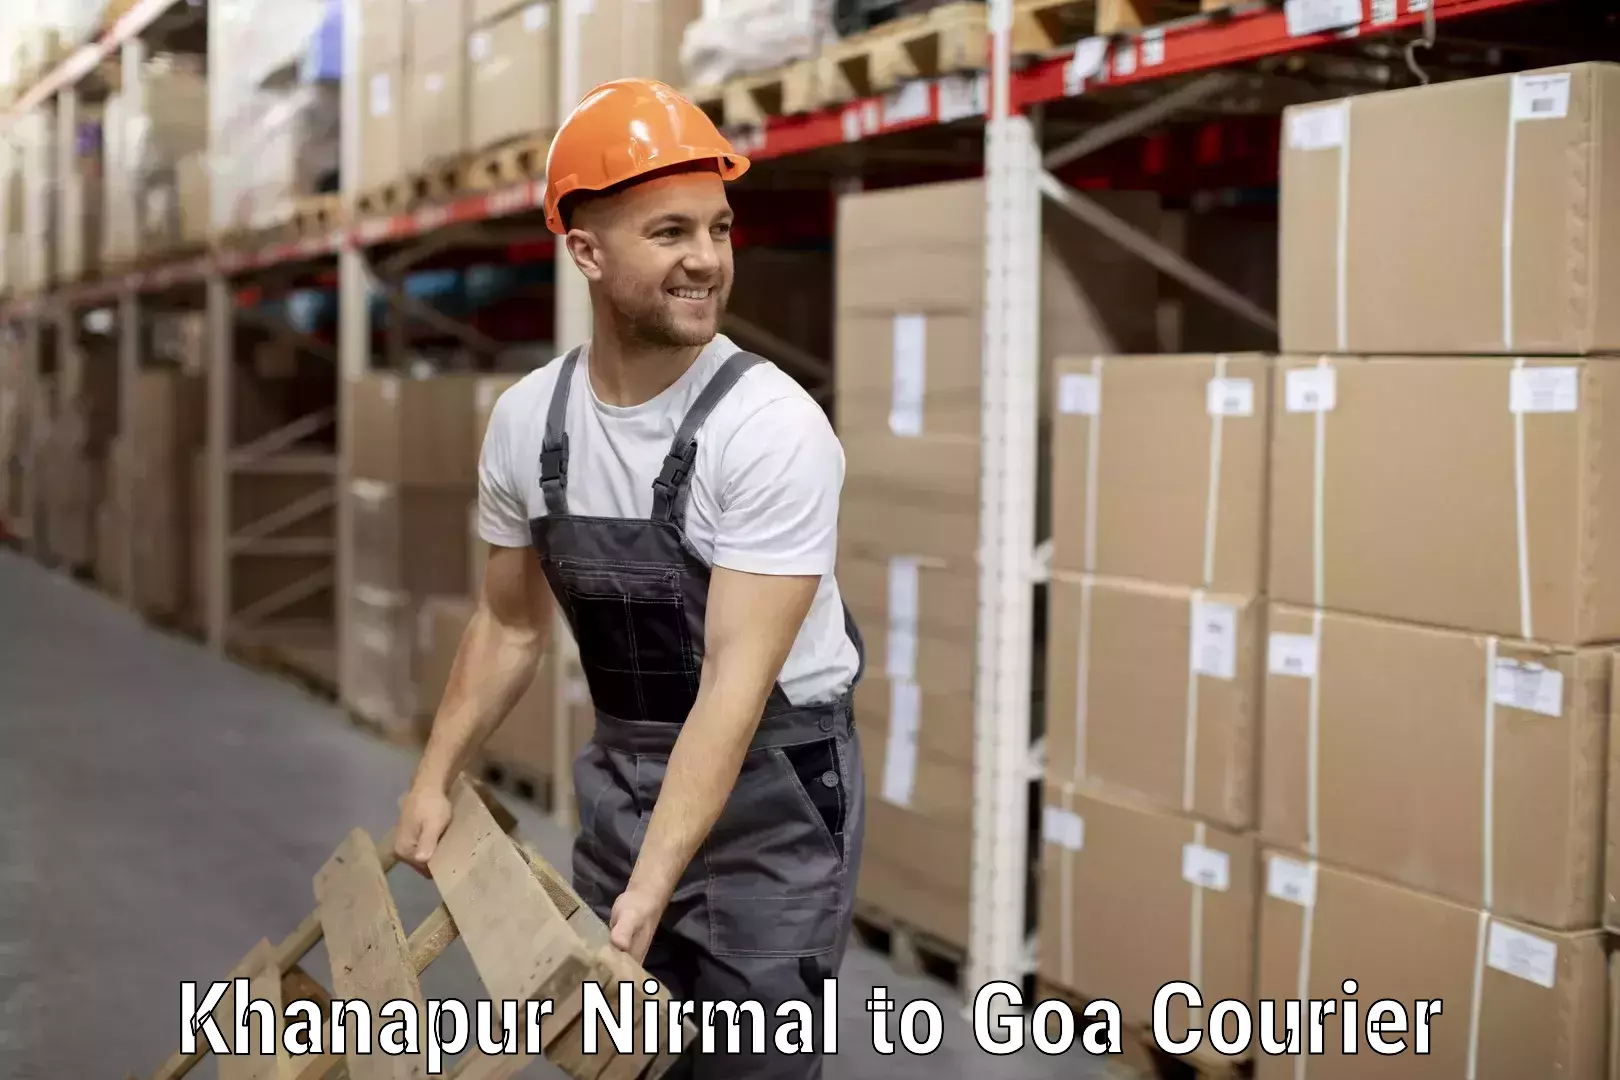 Luggage transport company Khanapur Nirmal to Goa University